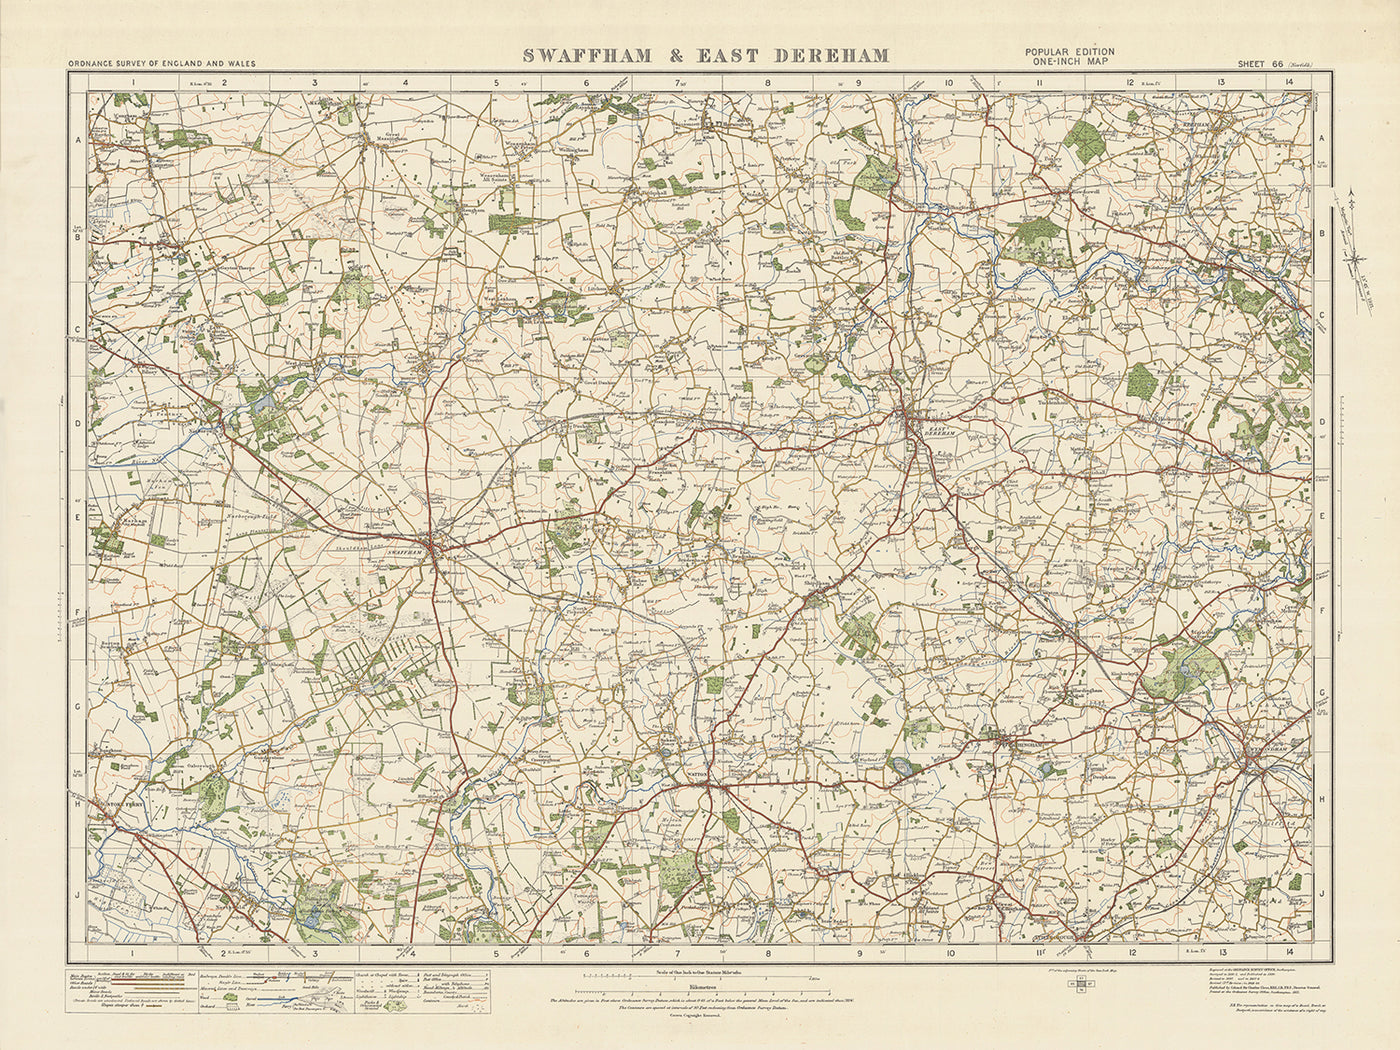 Carte Old Ordnance Survey, feuille 66 - Swaffam & East Dereham, 1925 : Watton, Wymondham, Attleborough, Reepham, Oxburgh Estate